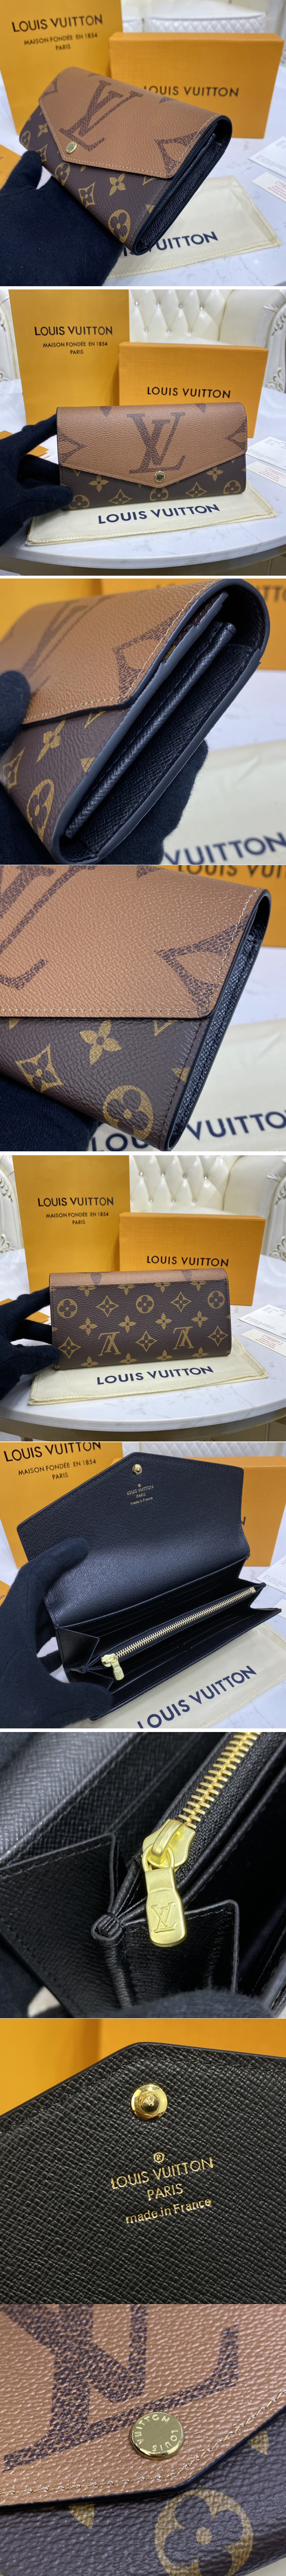 Louis Vuitton PORTEFEUILLE SARAH Sarah Wallet (M80726)